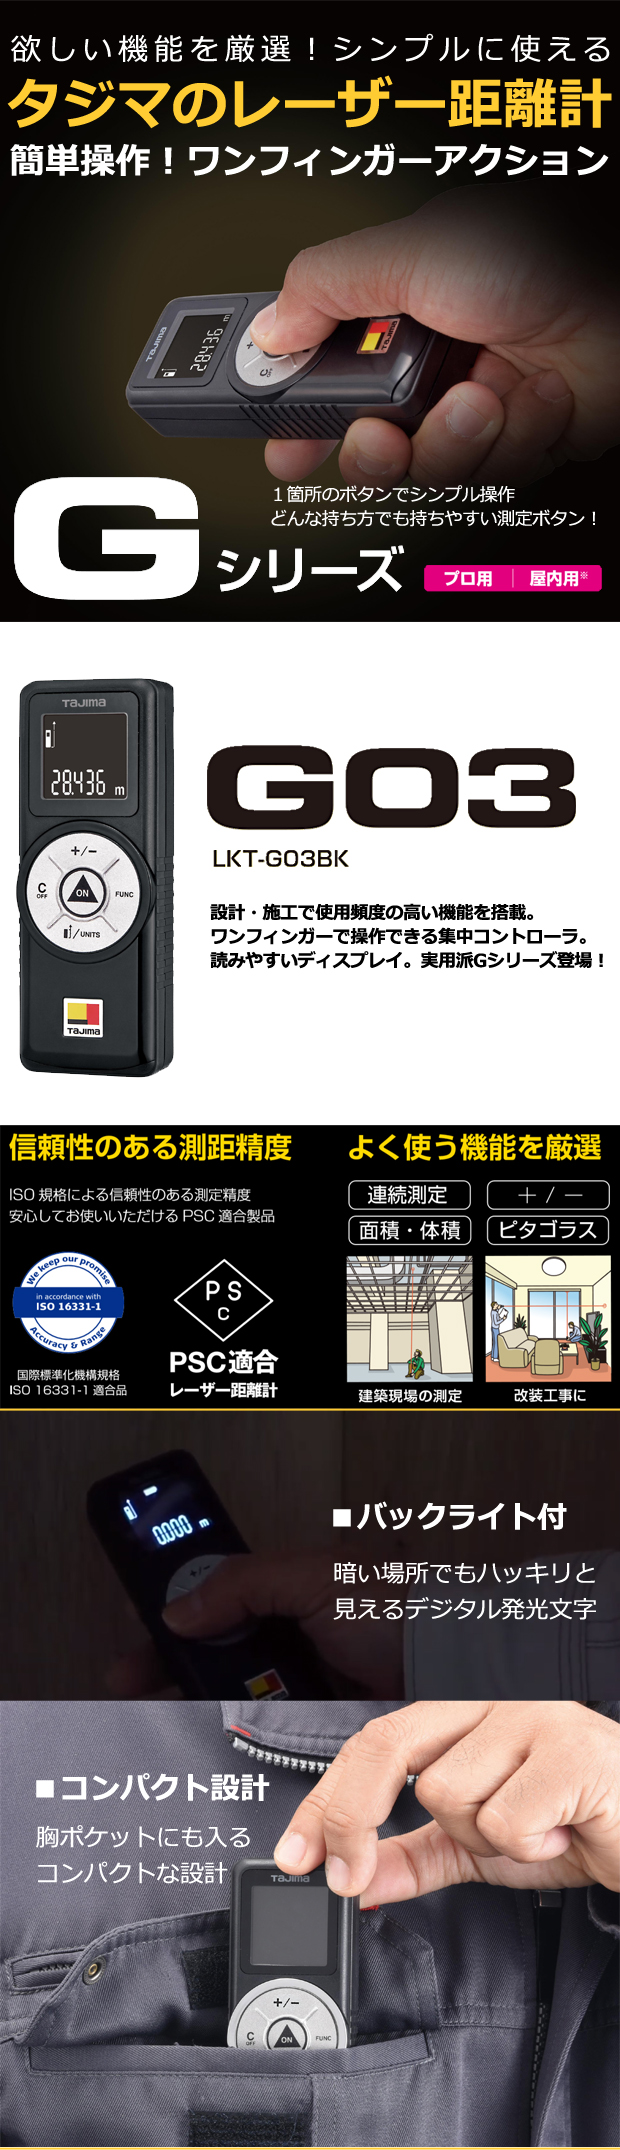 タジマ レーザー距離計 Gシリーズ G03 測距範囲 30m 電動工具・エアー ...